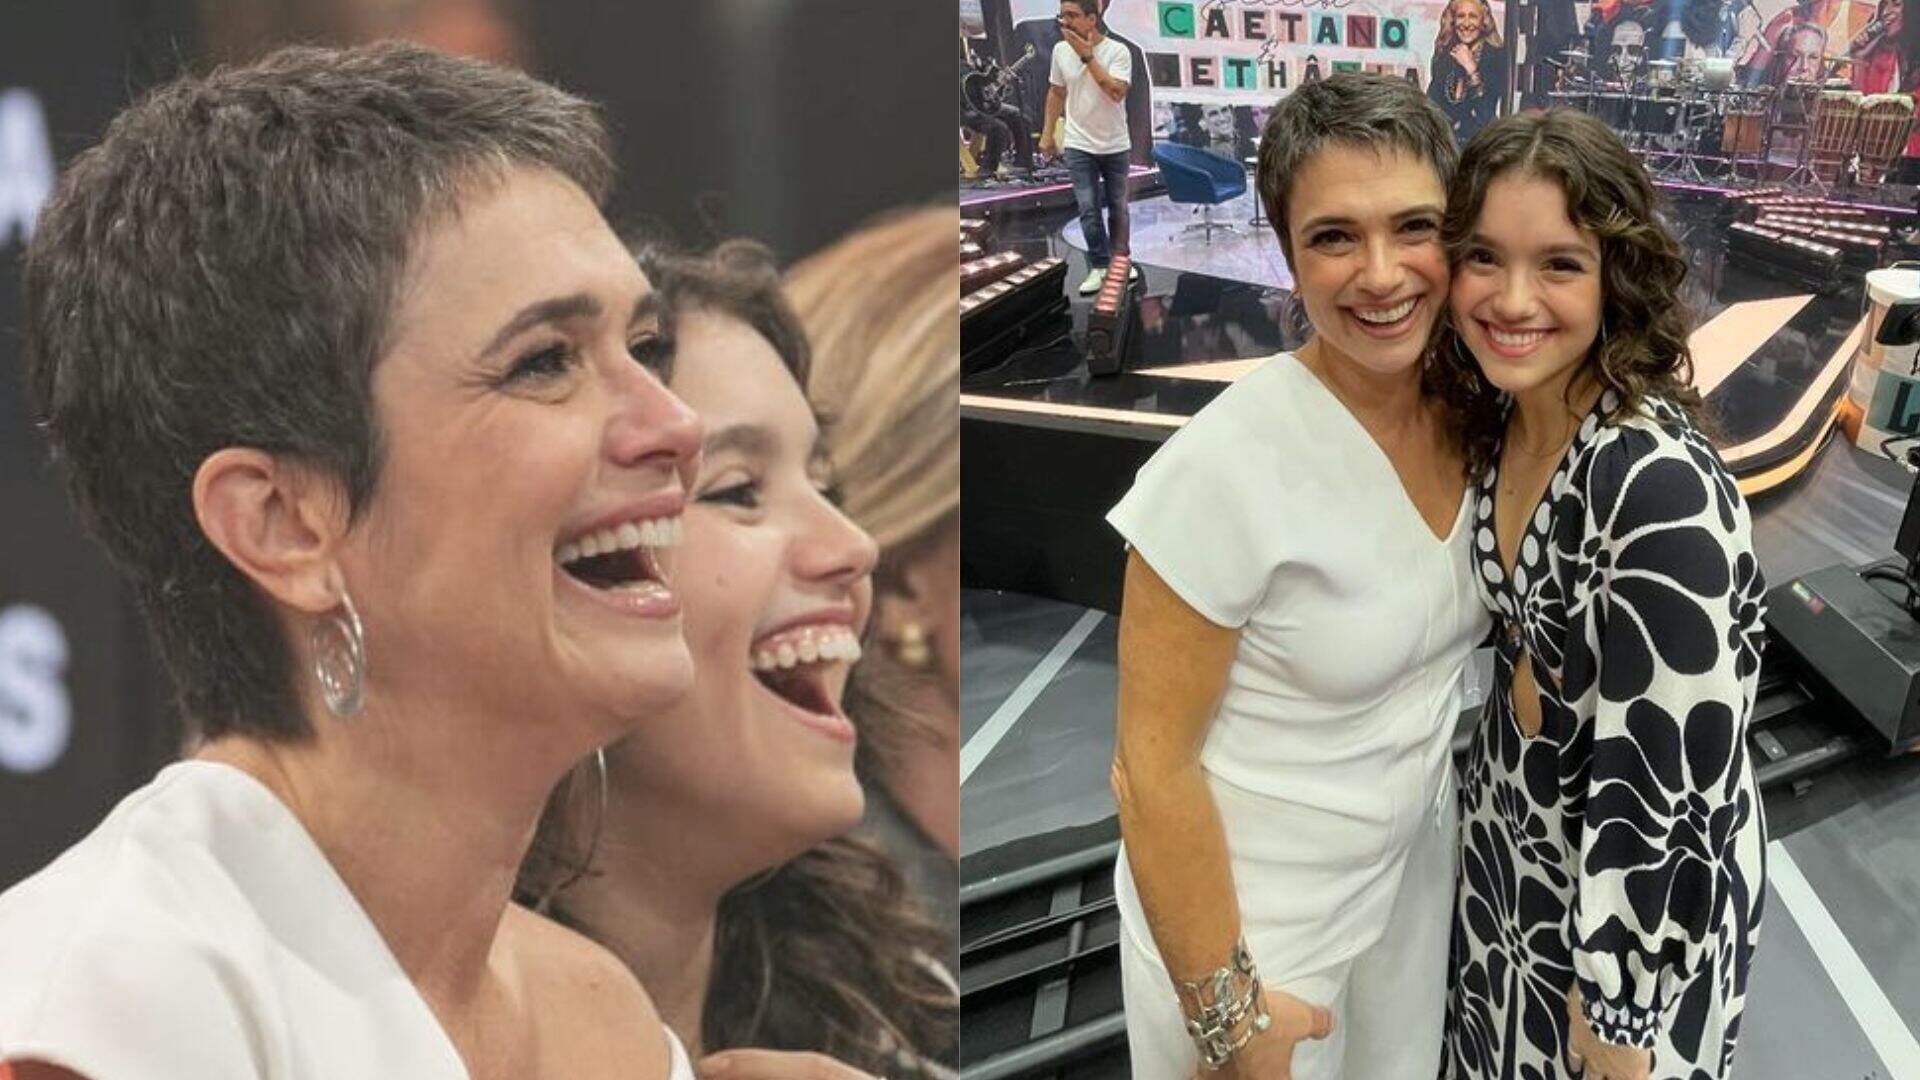 A definição do copia e cola! Semelhança entre Sandra Annenberg e a filha choca internautas - Metropolitana FM